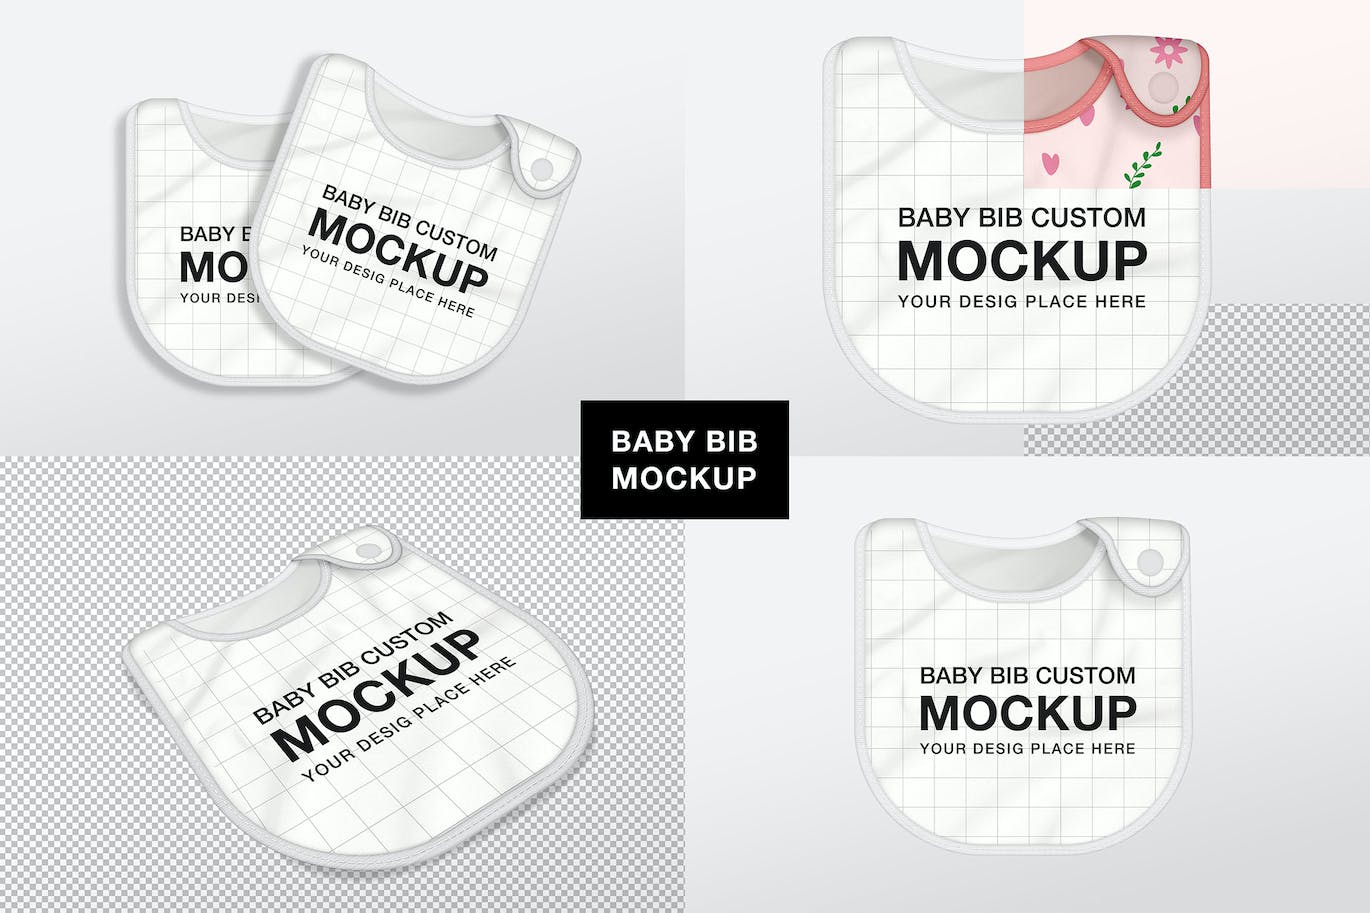 婴儿围兜图案设计样机 (PSD)